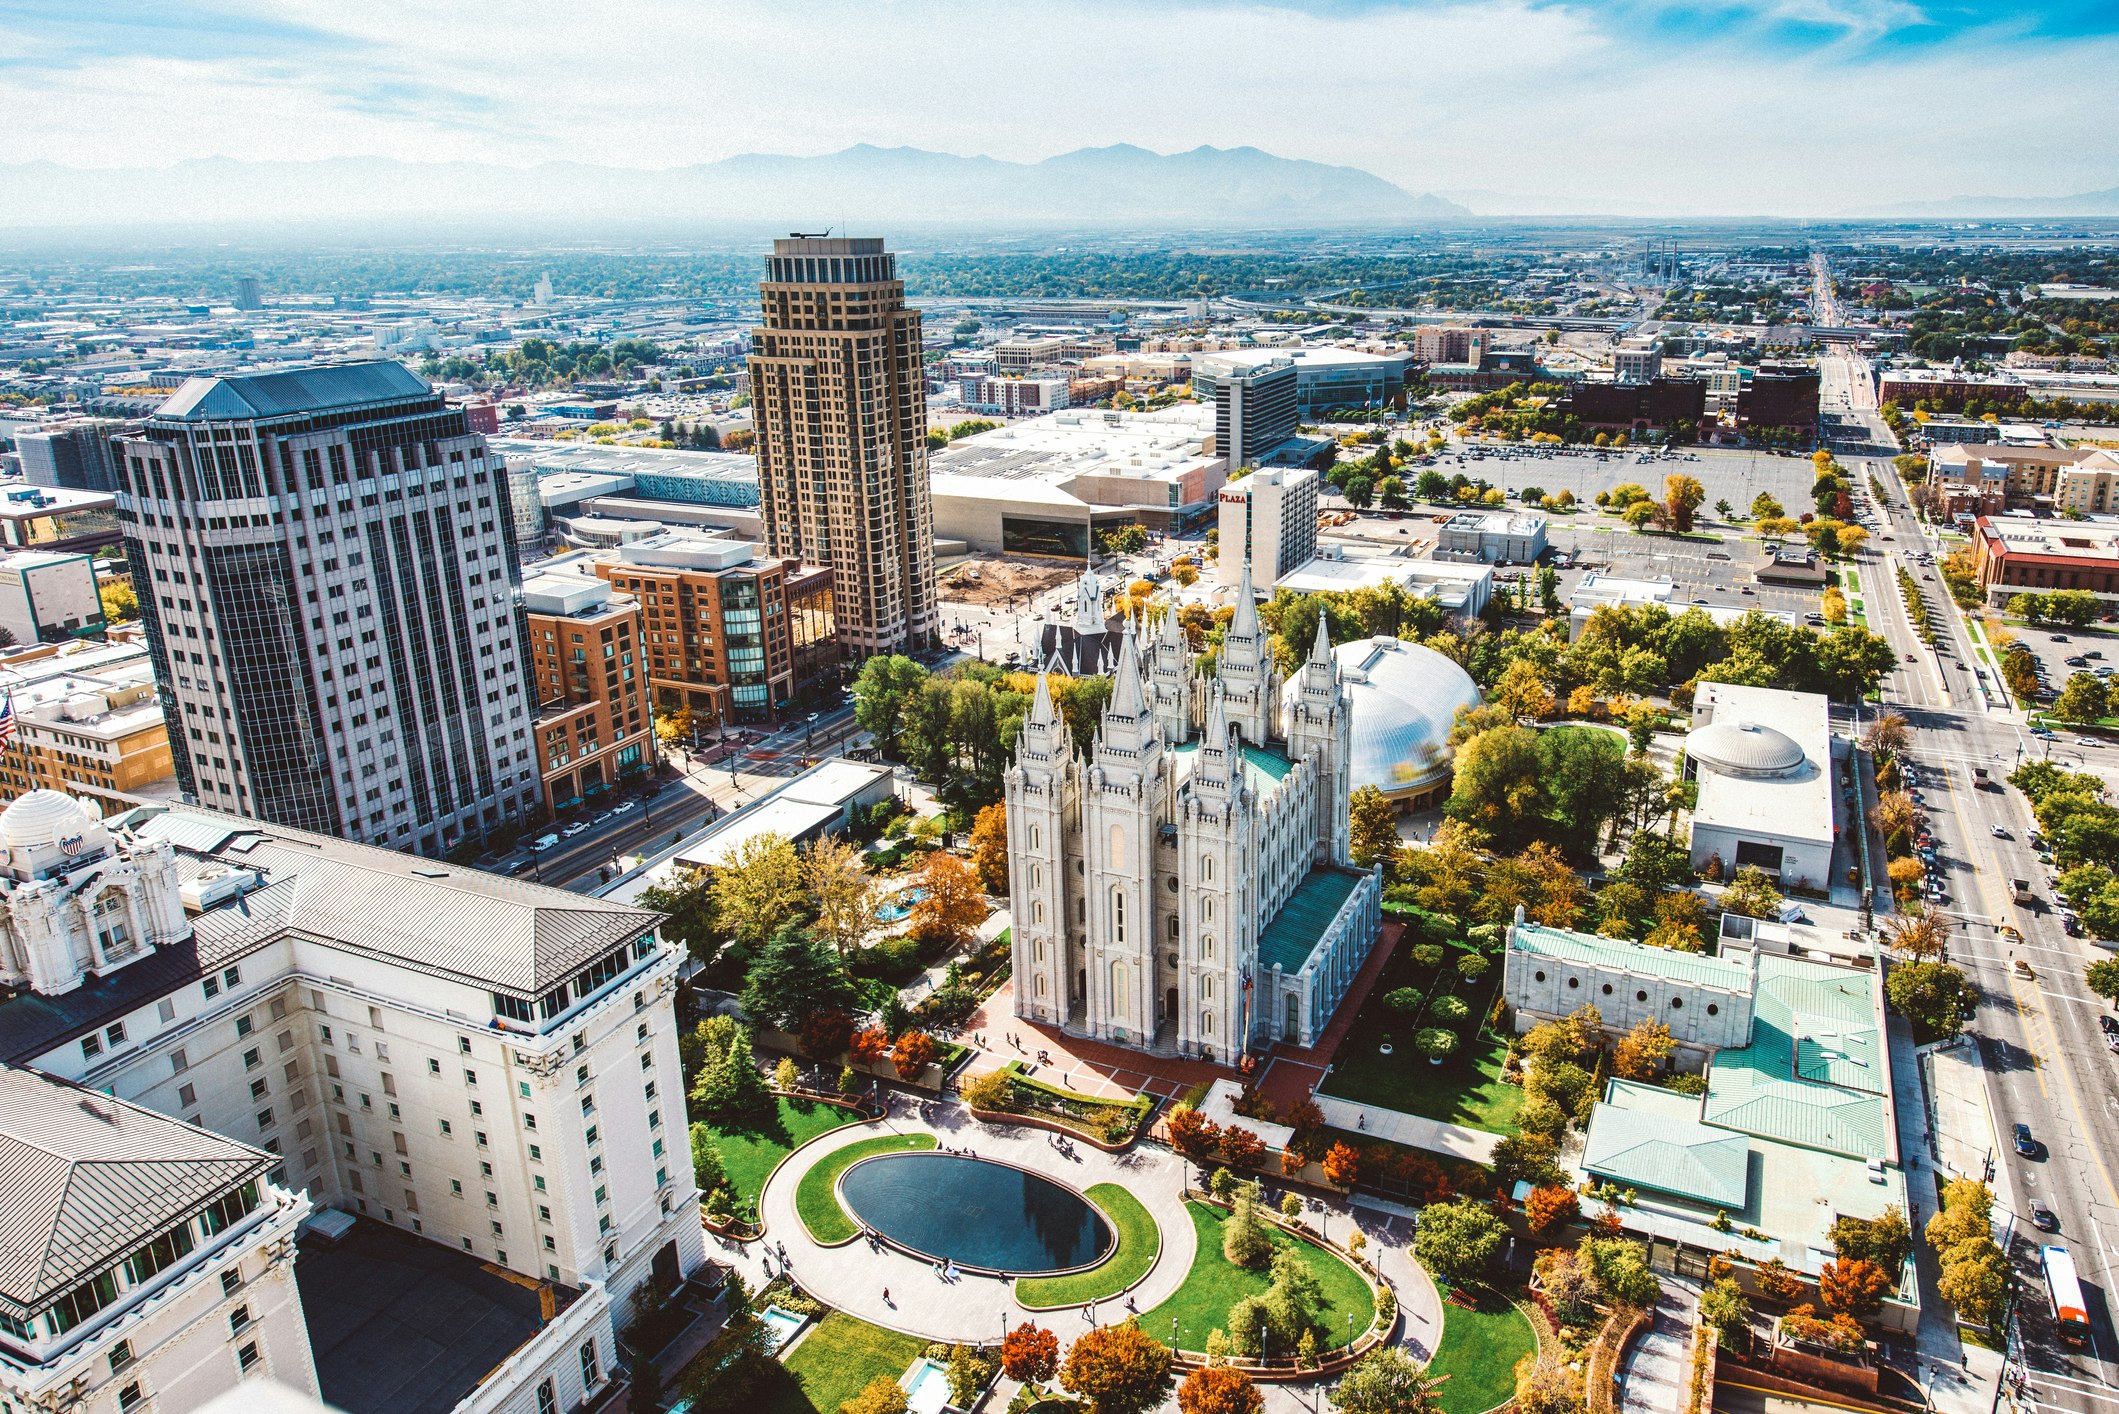 Aerial view of Salt Lake City, Utah